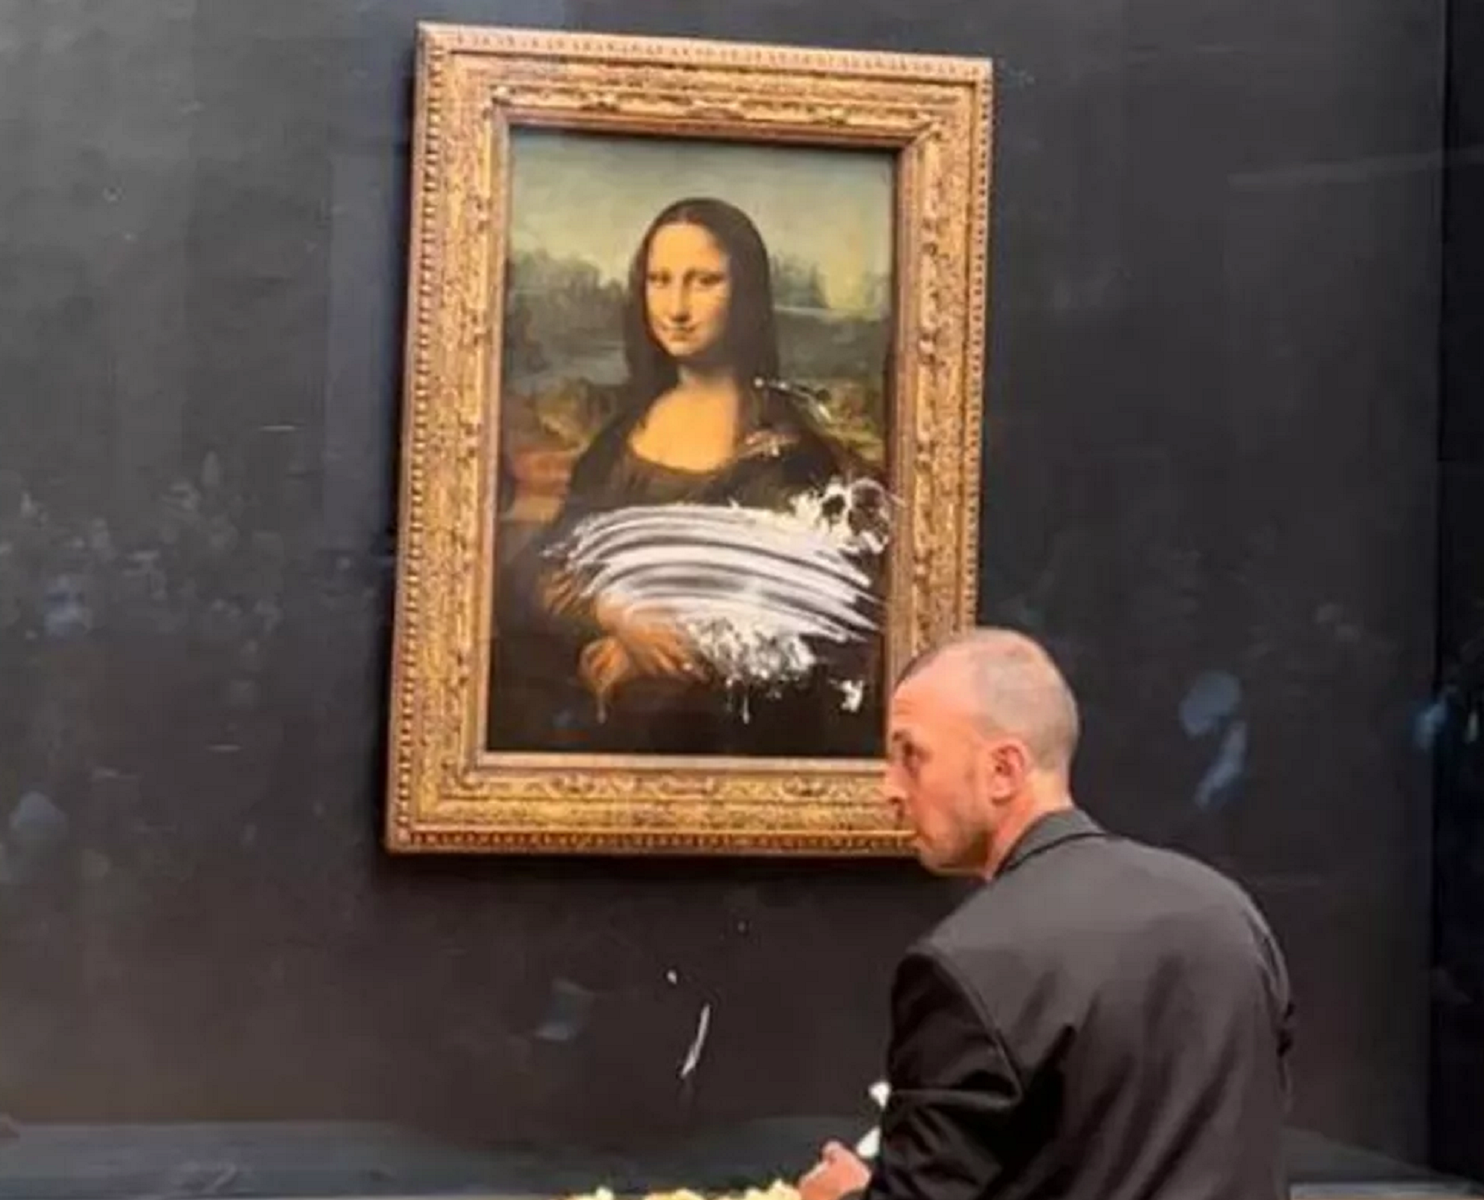 Protegido por vidro à prova de balas, quadro da Mona Lisa saiu ileso de ataque à torta